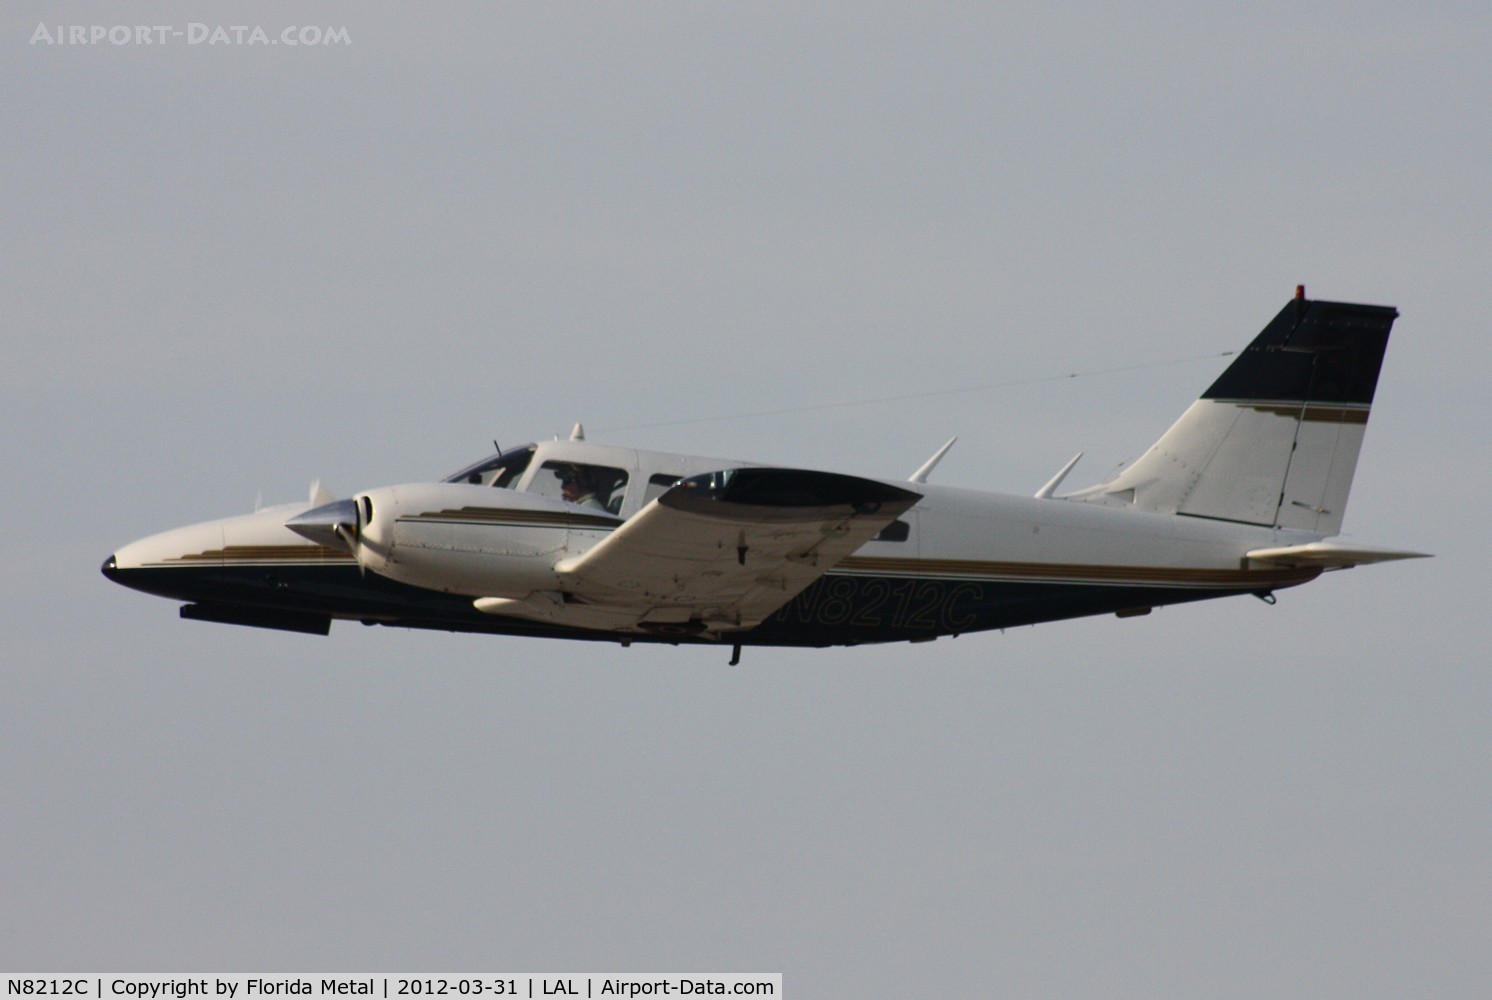 N8212C, 1975 Piper PA-34-200T C/N 34-7670120, Pa-34